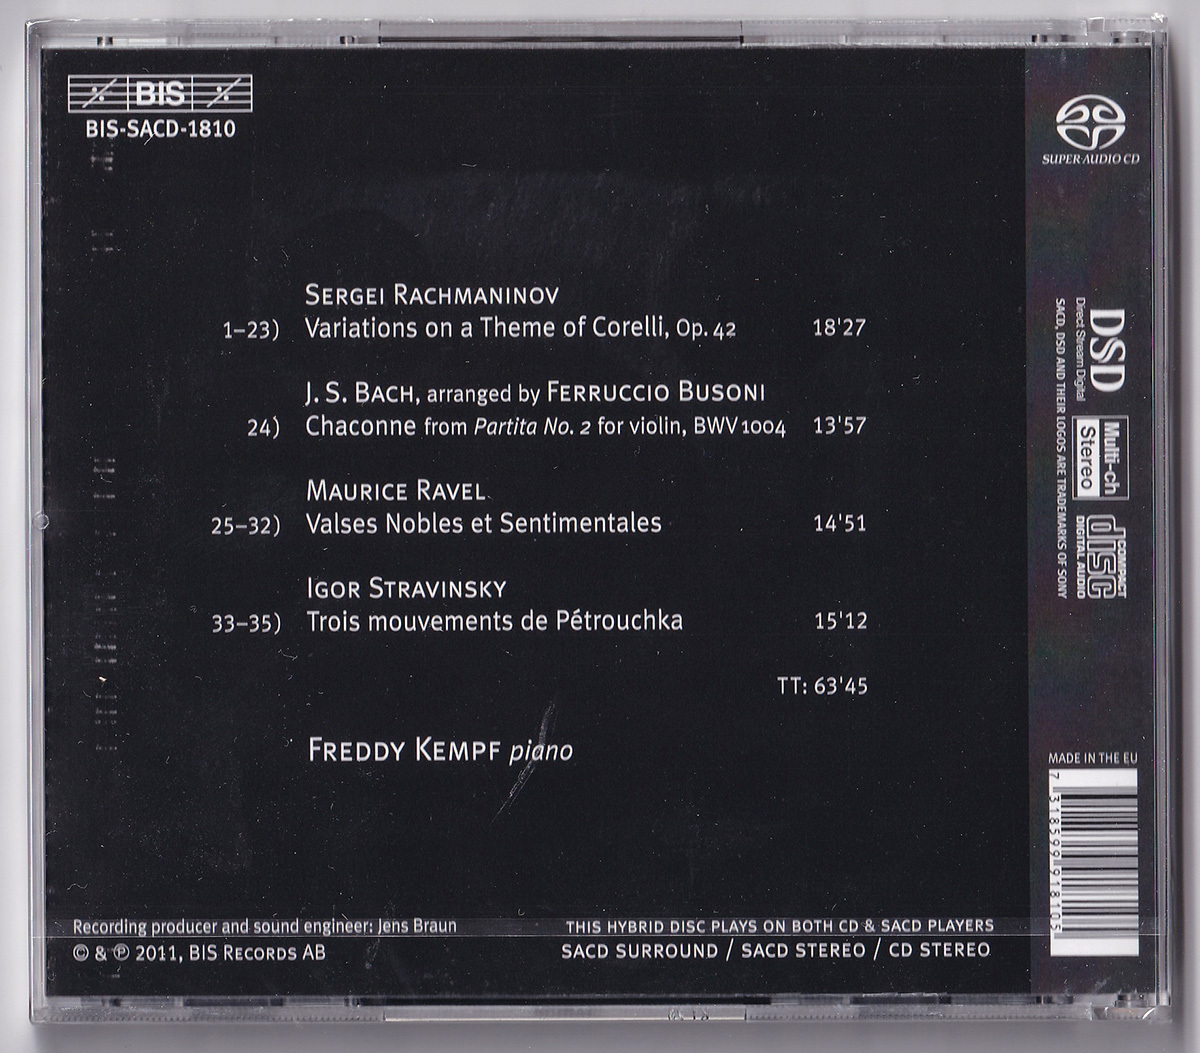 BIS-SACD-1810 フレディ・ケンプ、ラフマニノフ: コレッリの主題による変奏曲、バッハ: シャコンヌ、ラヴェル: 優雅で感傷的なワルツ SACD_画像3